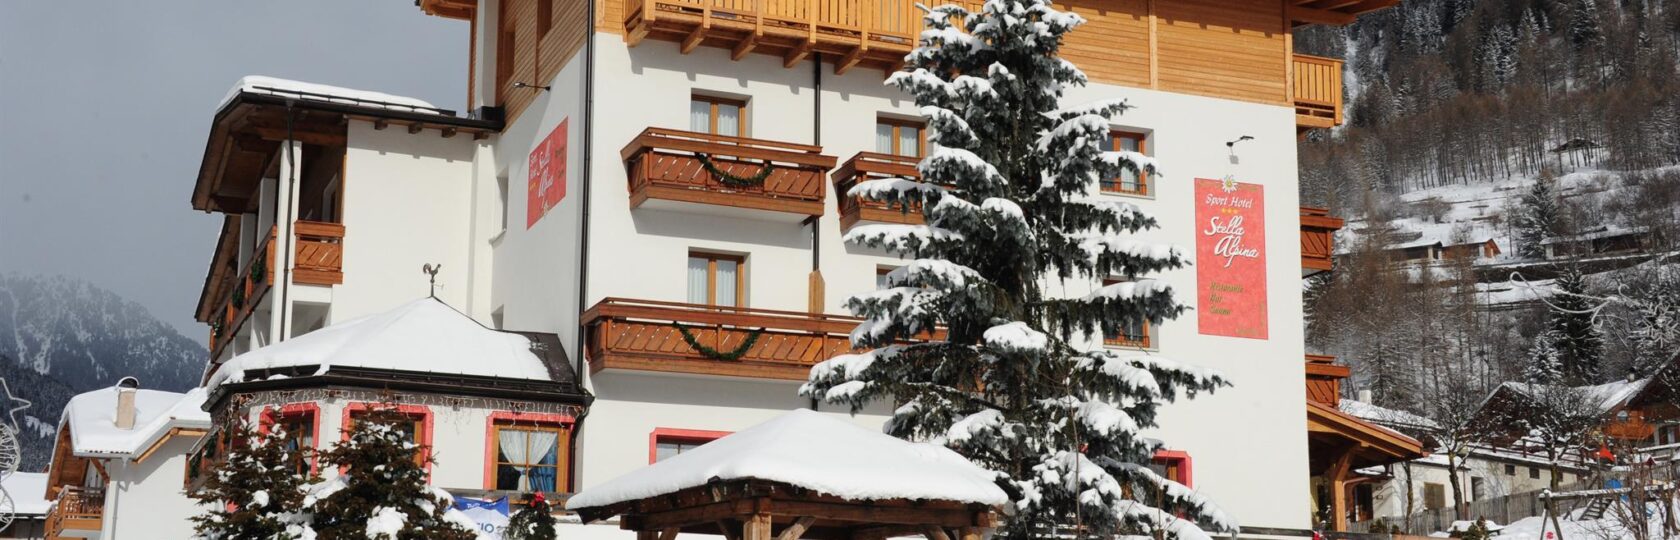 hotel stella alpina_inverno